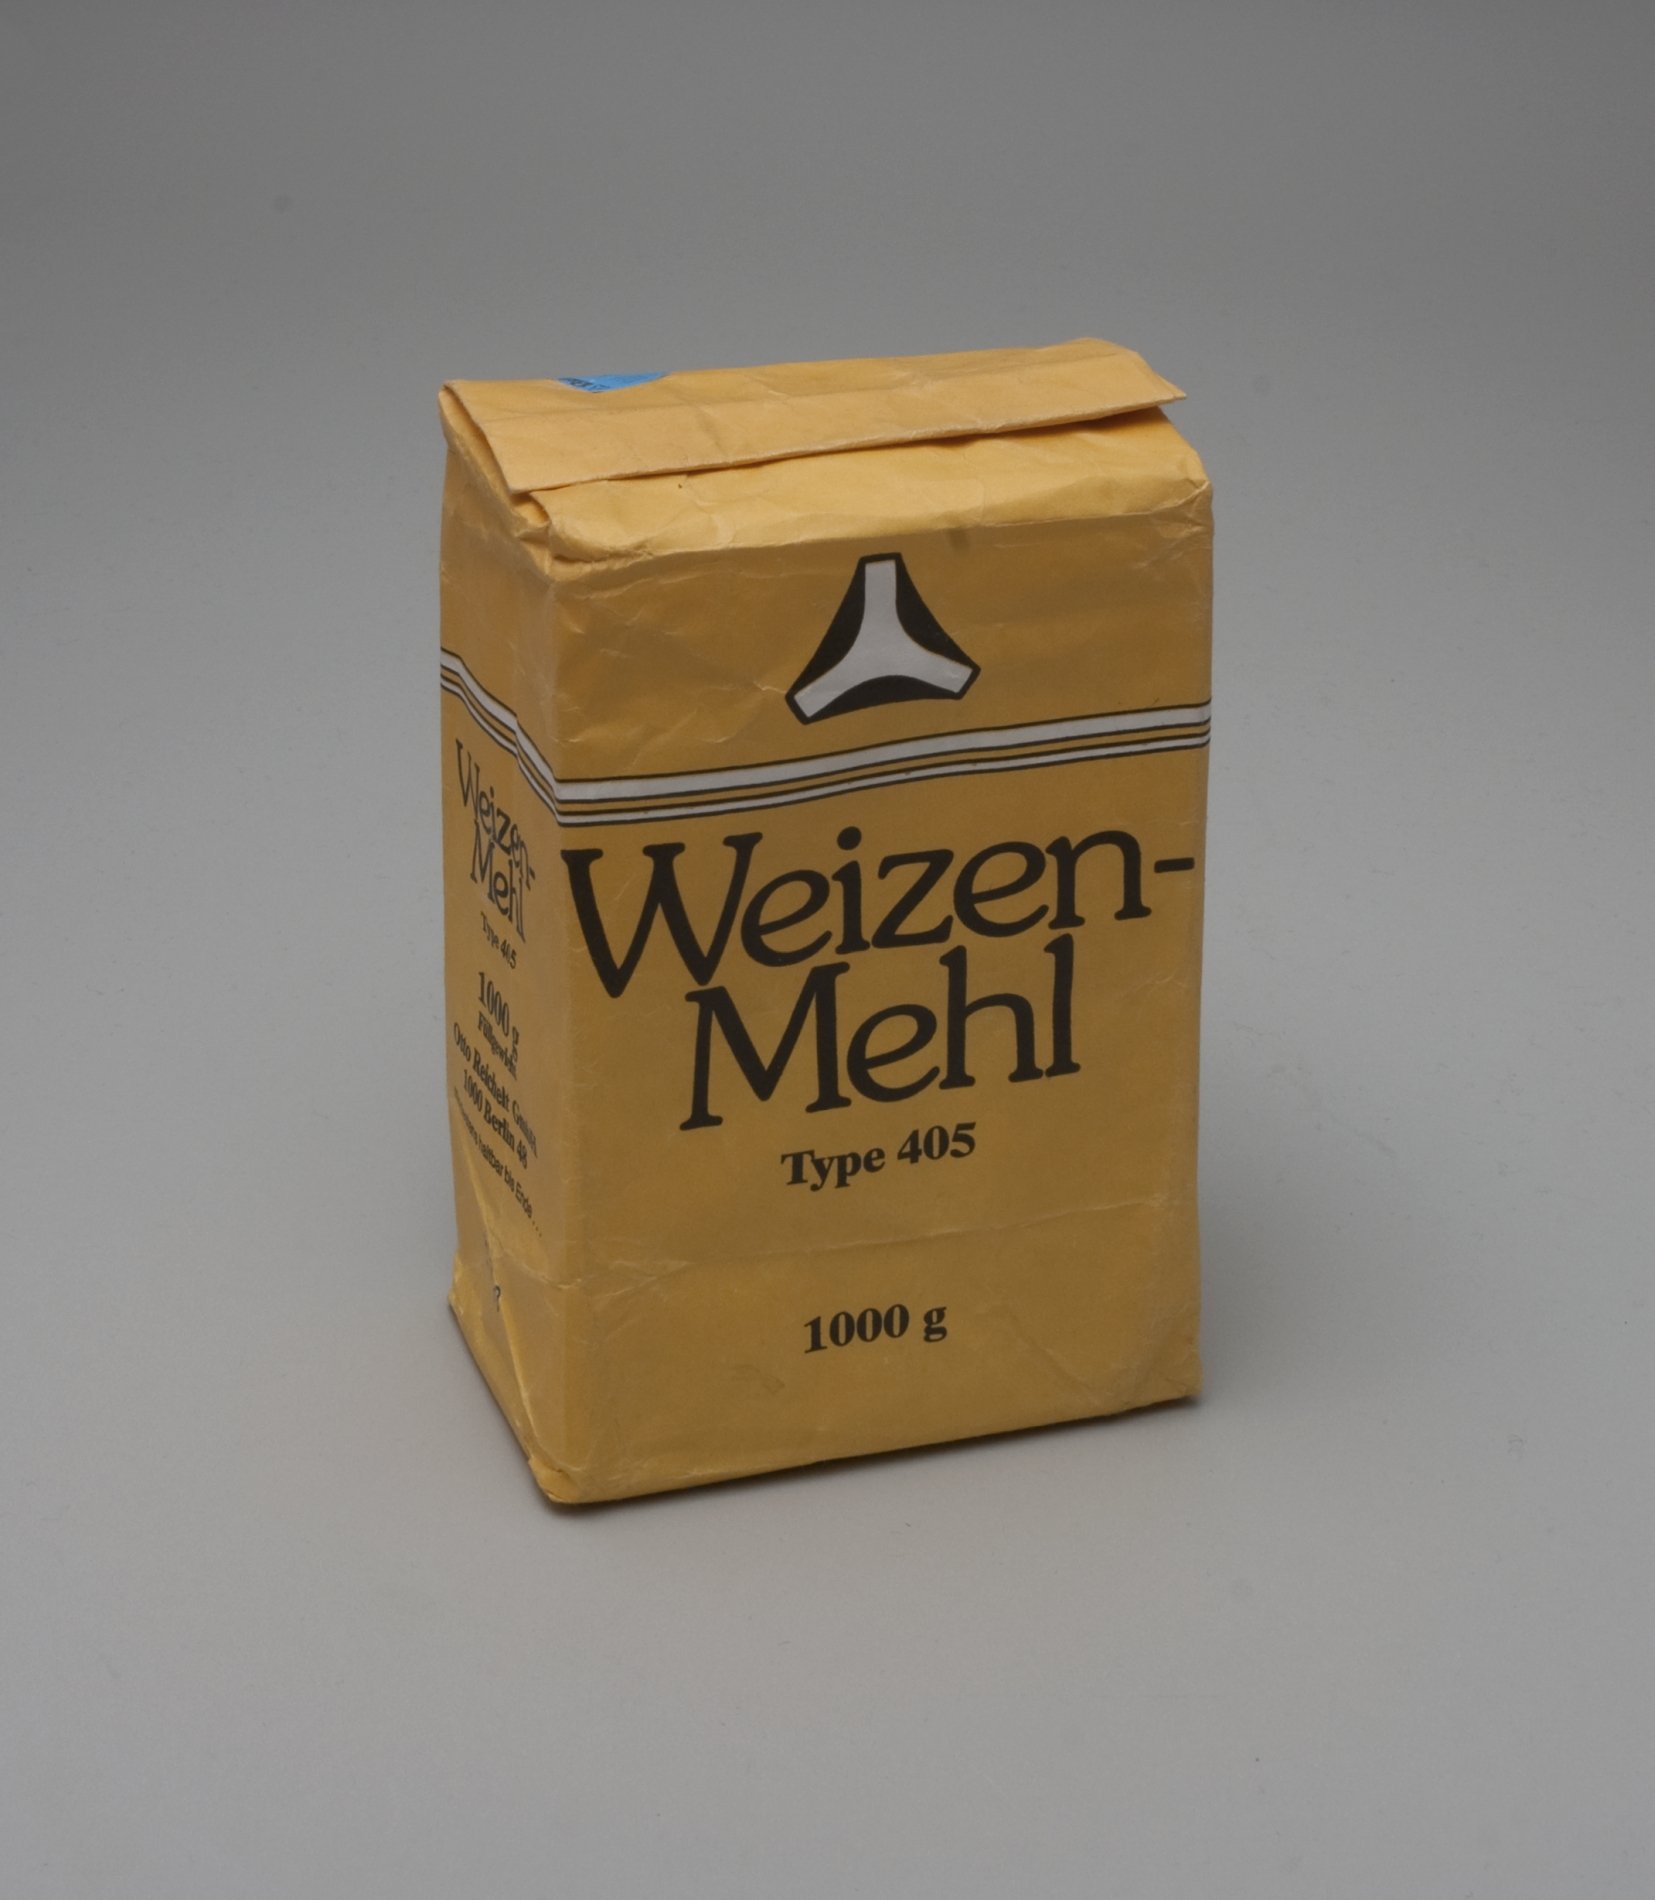 Weizenmehl- Verpackung der "Reichelt" Eigenmarke (Stiftung Domäne Dahlem - Landgut und Museum, Weiternutzung nur mit Genehmigung des Museums CC BY-NC-SA)